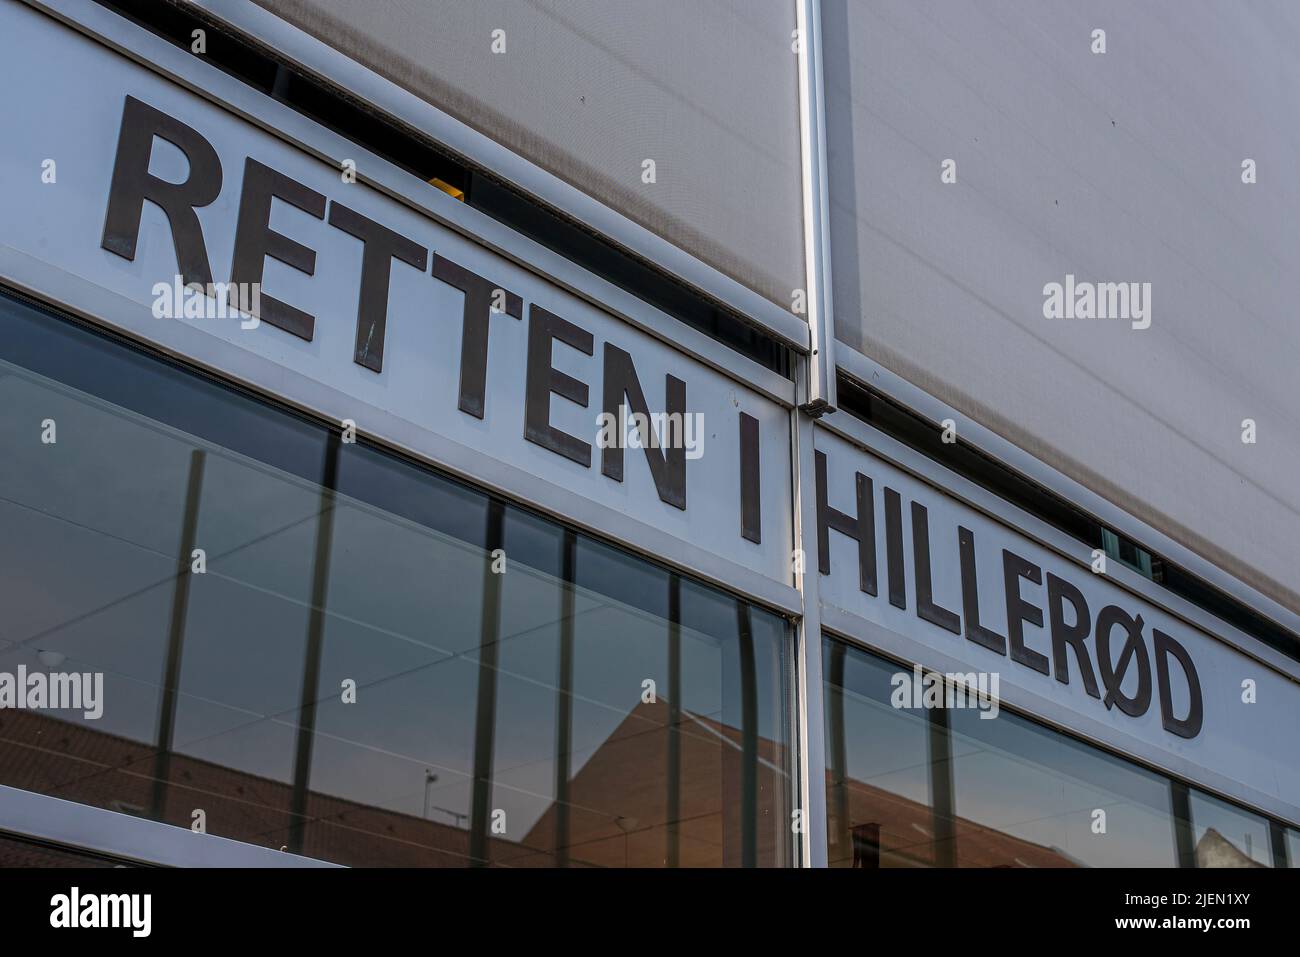 El cartel y la fachada de vidrio del palacio de justicia de Hillerød, Dinamarca, 27 de junio de 2022 Foto de stock